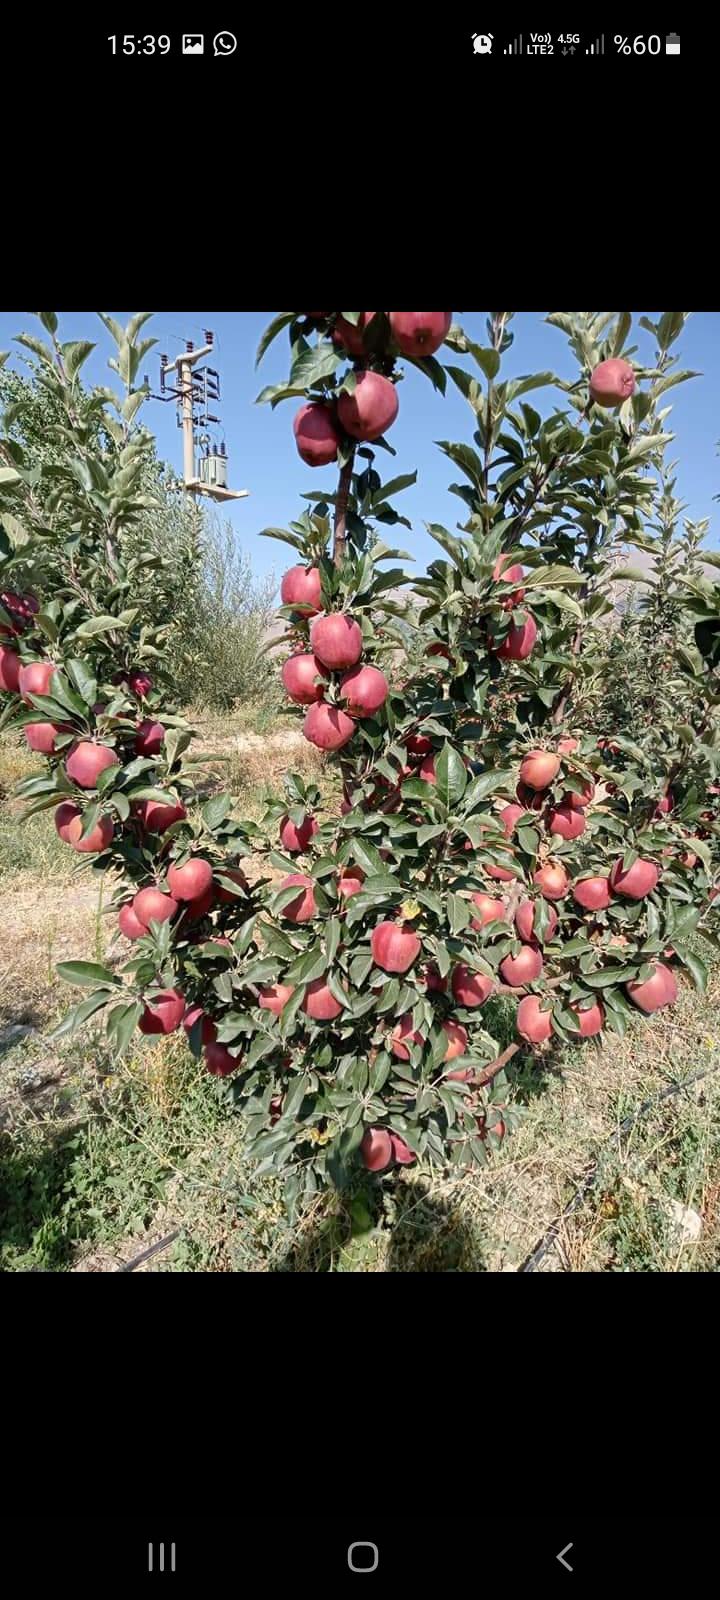 Elma - Mustafa Sönmez tarafından verilen satılık scarlet spur çeşidi elma  ilanını ve diğer satılık elma ilanlarını tarimziraat.com adresinde bulabilirsiniz